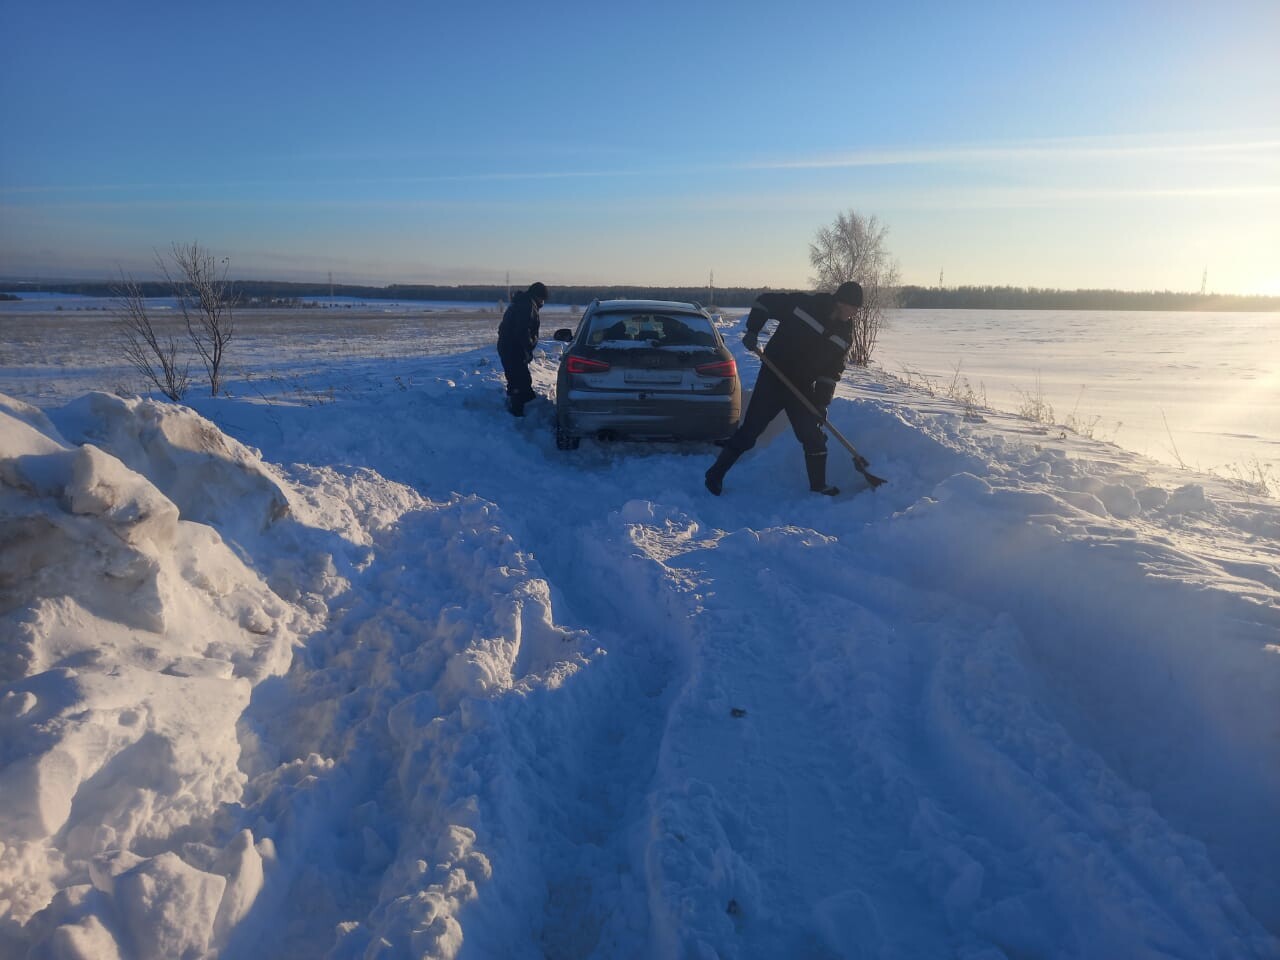 Спасатели помогли троим татарстанцам, авто которых увязло в поле в снегу